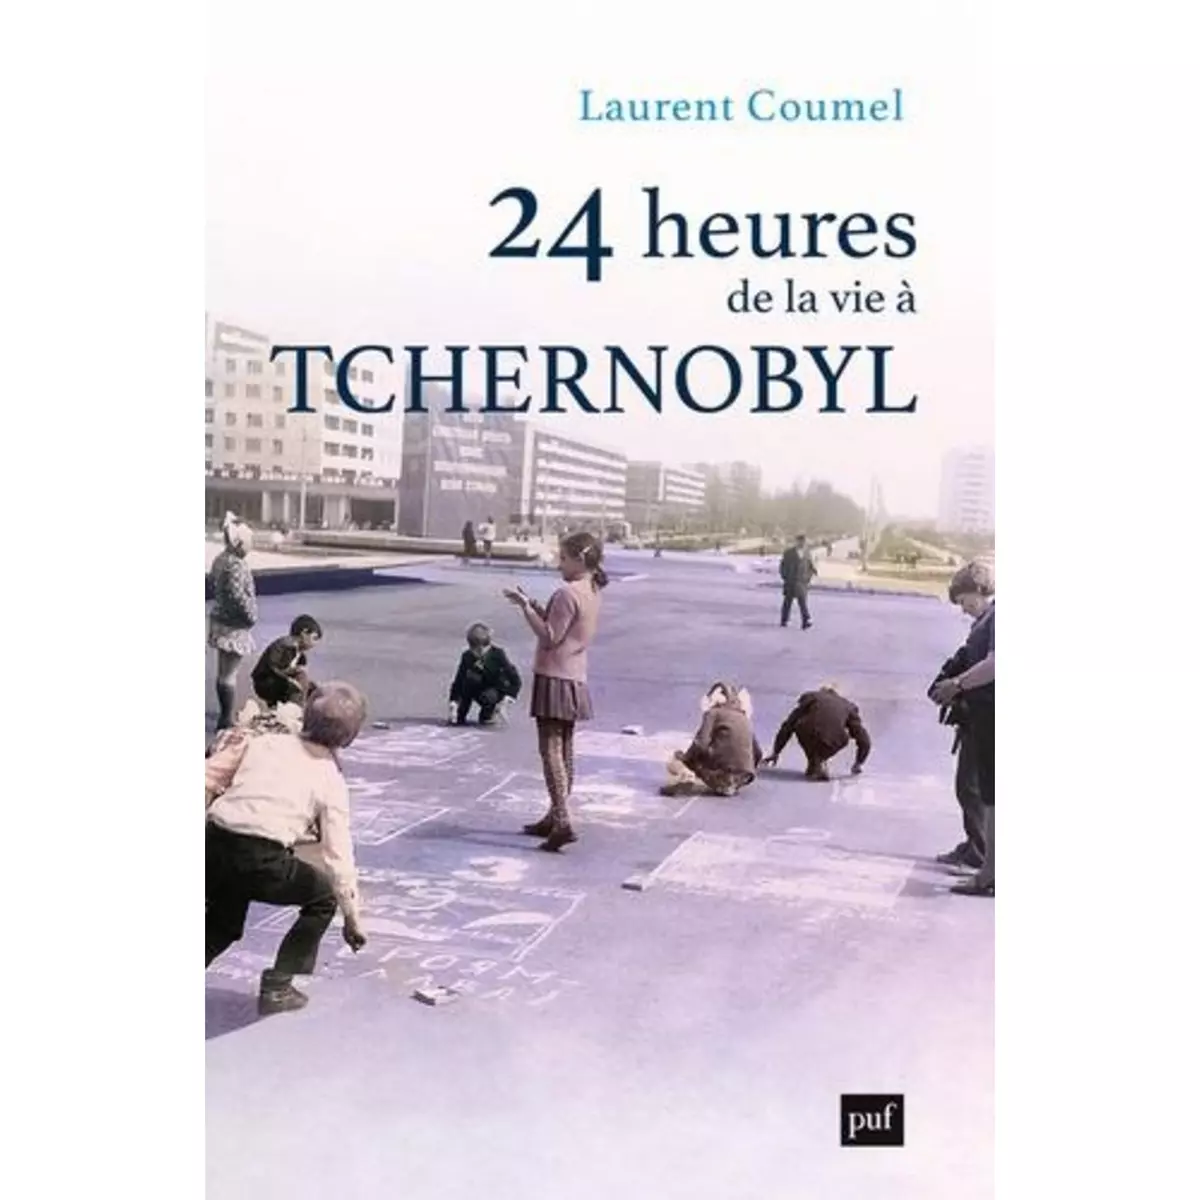  24 HEURES DE LA VIE A TCHERNOBYL, Coumel Laurent